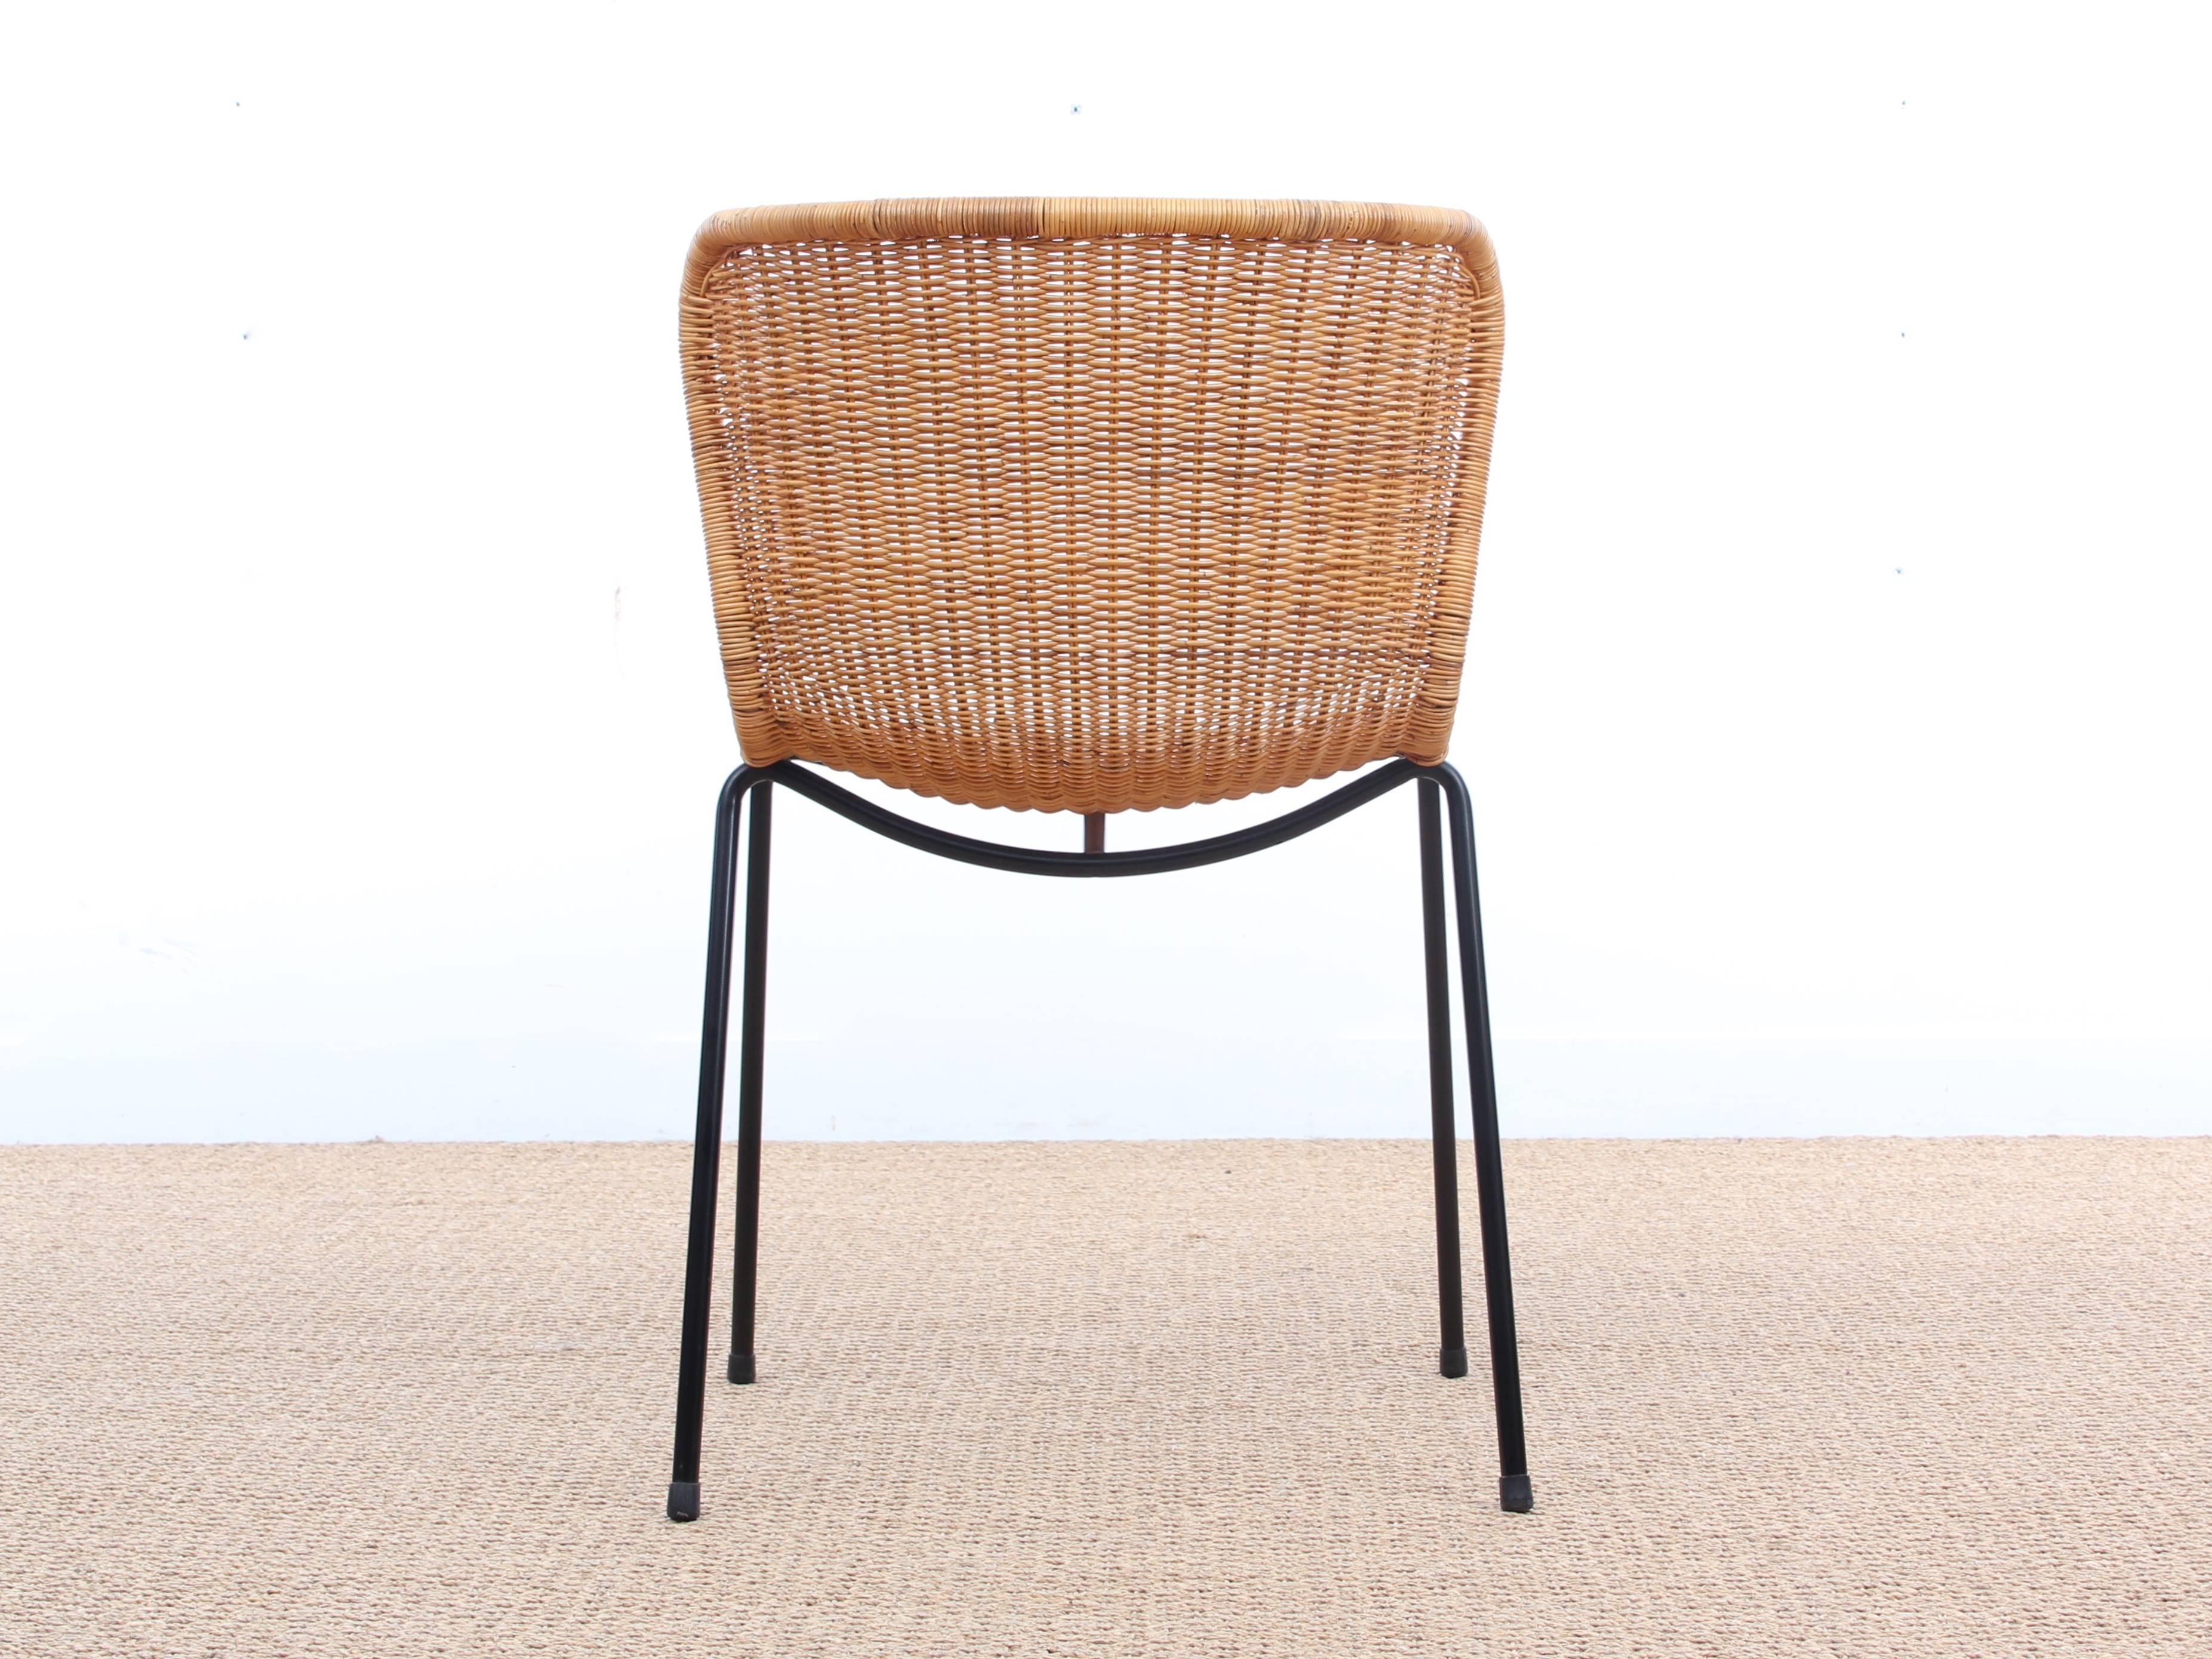 Der Stuhl C603 des japanischen Designers Yuzuru Yamakawa wurde in den 1960er Jahren entworfen, entspricht aber dennoch den heutigen Anforderungen an Design und Komfort. Der Stuhl C603 aus natürlichem Rattan ist sowohl für die Gastronomie als auch